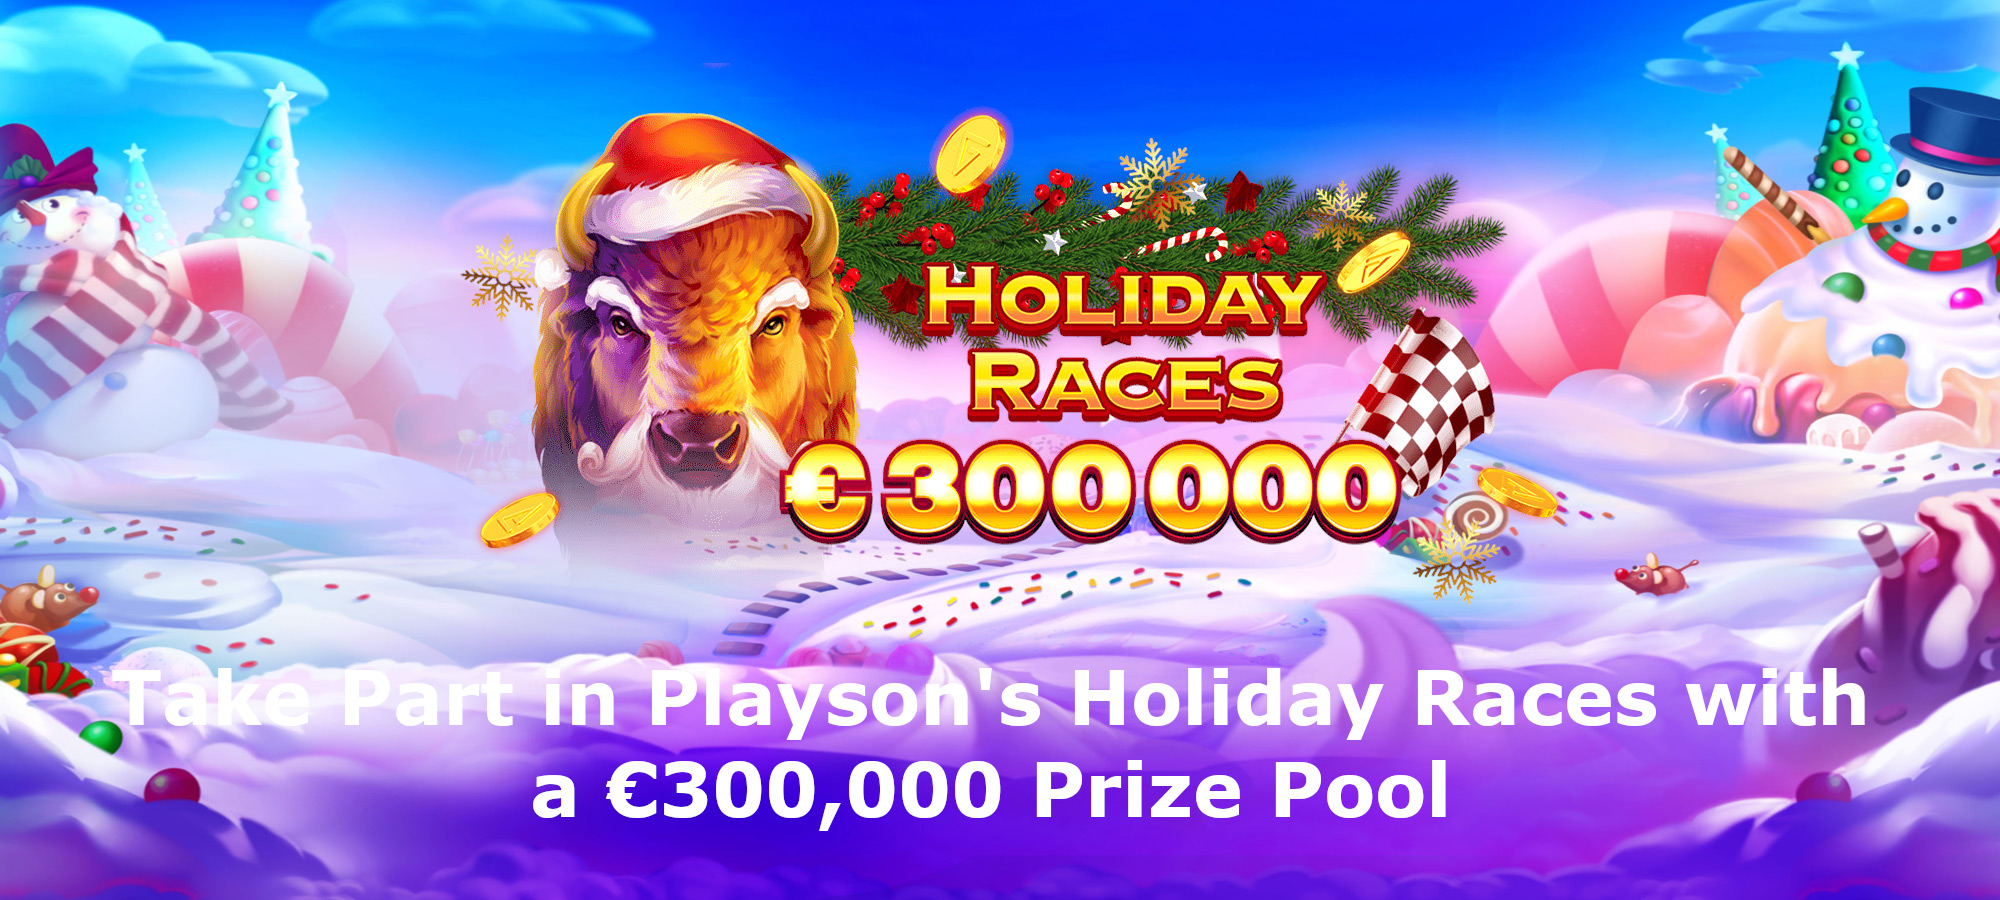 Participe das Playson’s Holiday Races com um Total de Prêmios de €300.000